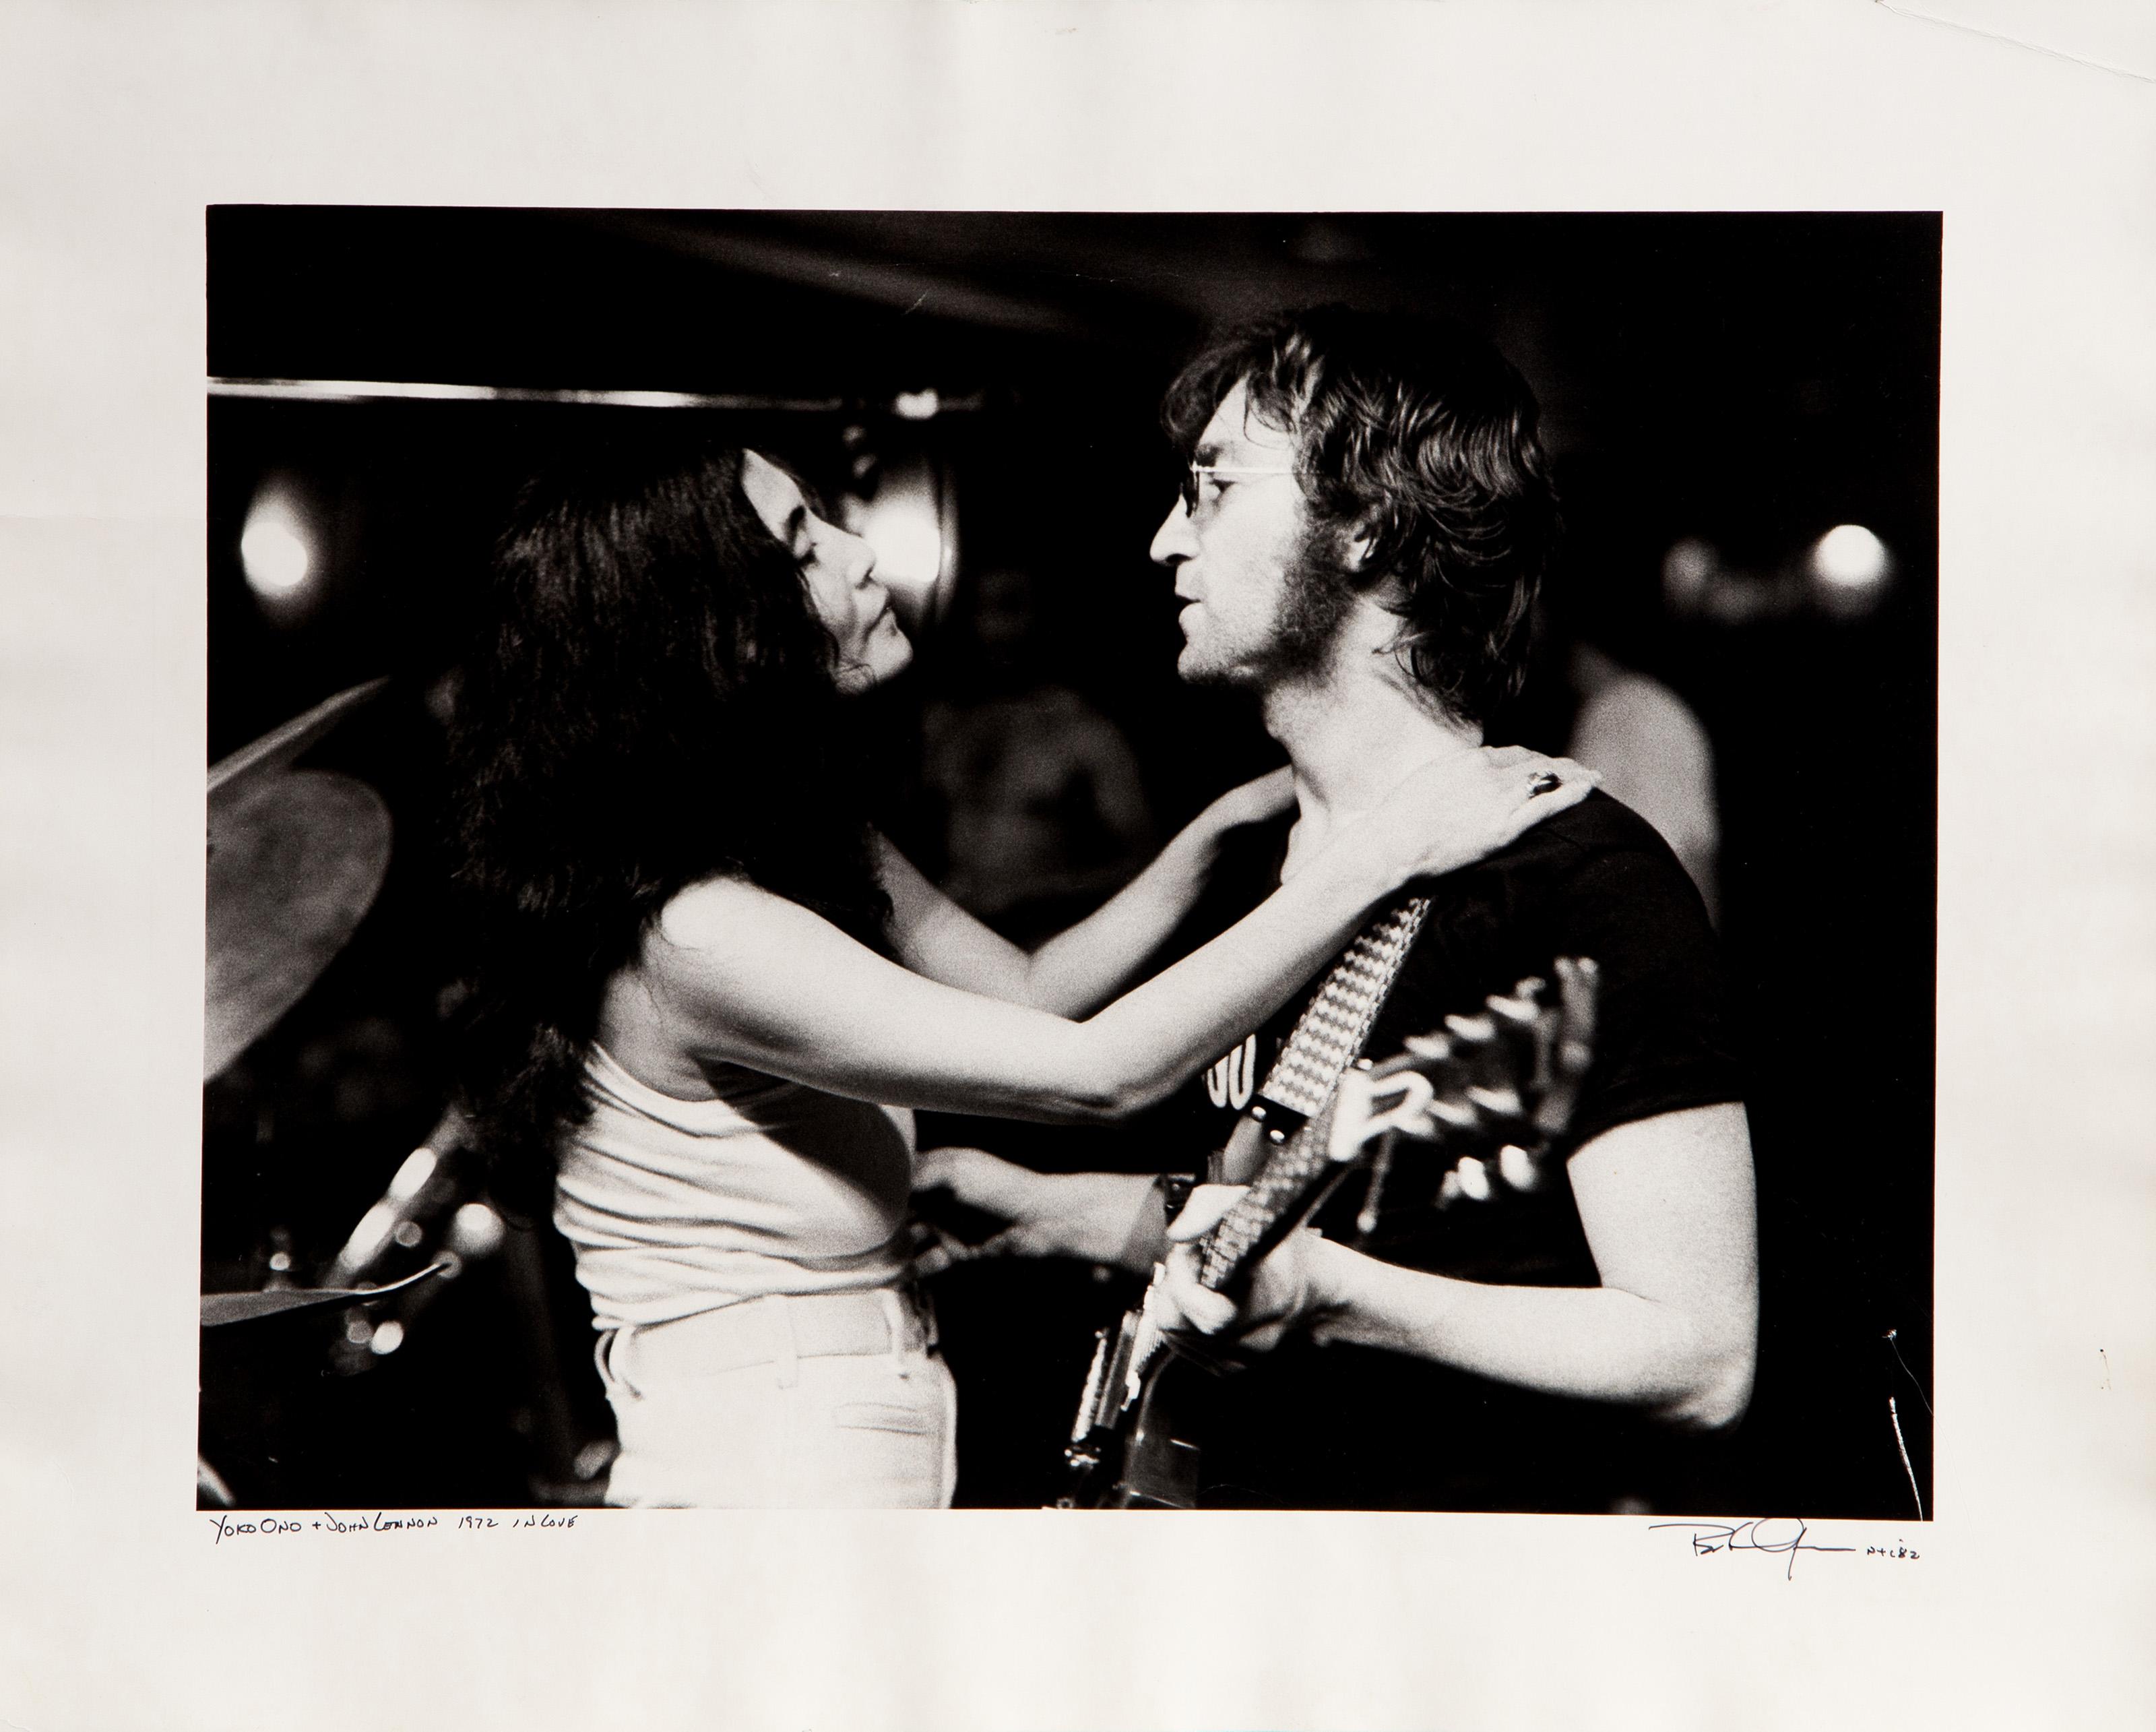 Yoko Ono et John Lennon amoureux
Bob Gruen, Américain (1945)
Date : 1972 (imprimé en 1982)
Photographie gélatino-argentique, signée, titrée et datée au stylo
Taille de l'image : 12 x 16 pouces
Taille : 16 x 20 in. (40.64 x 50.8 cm)